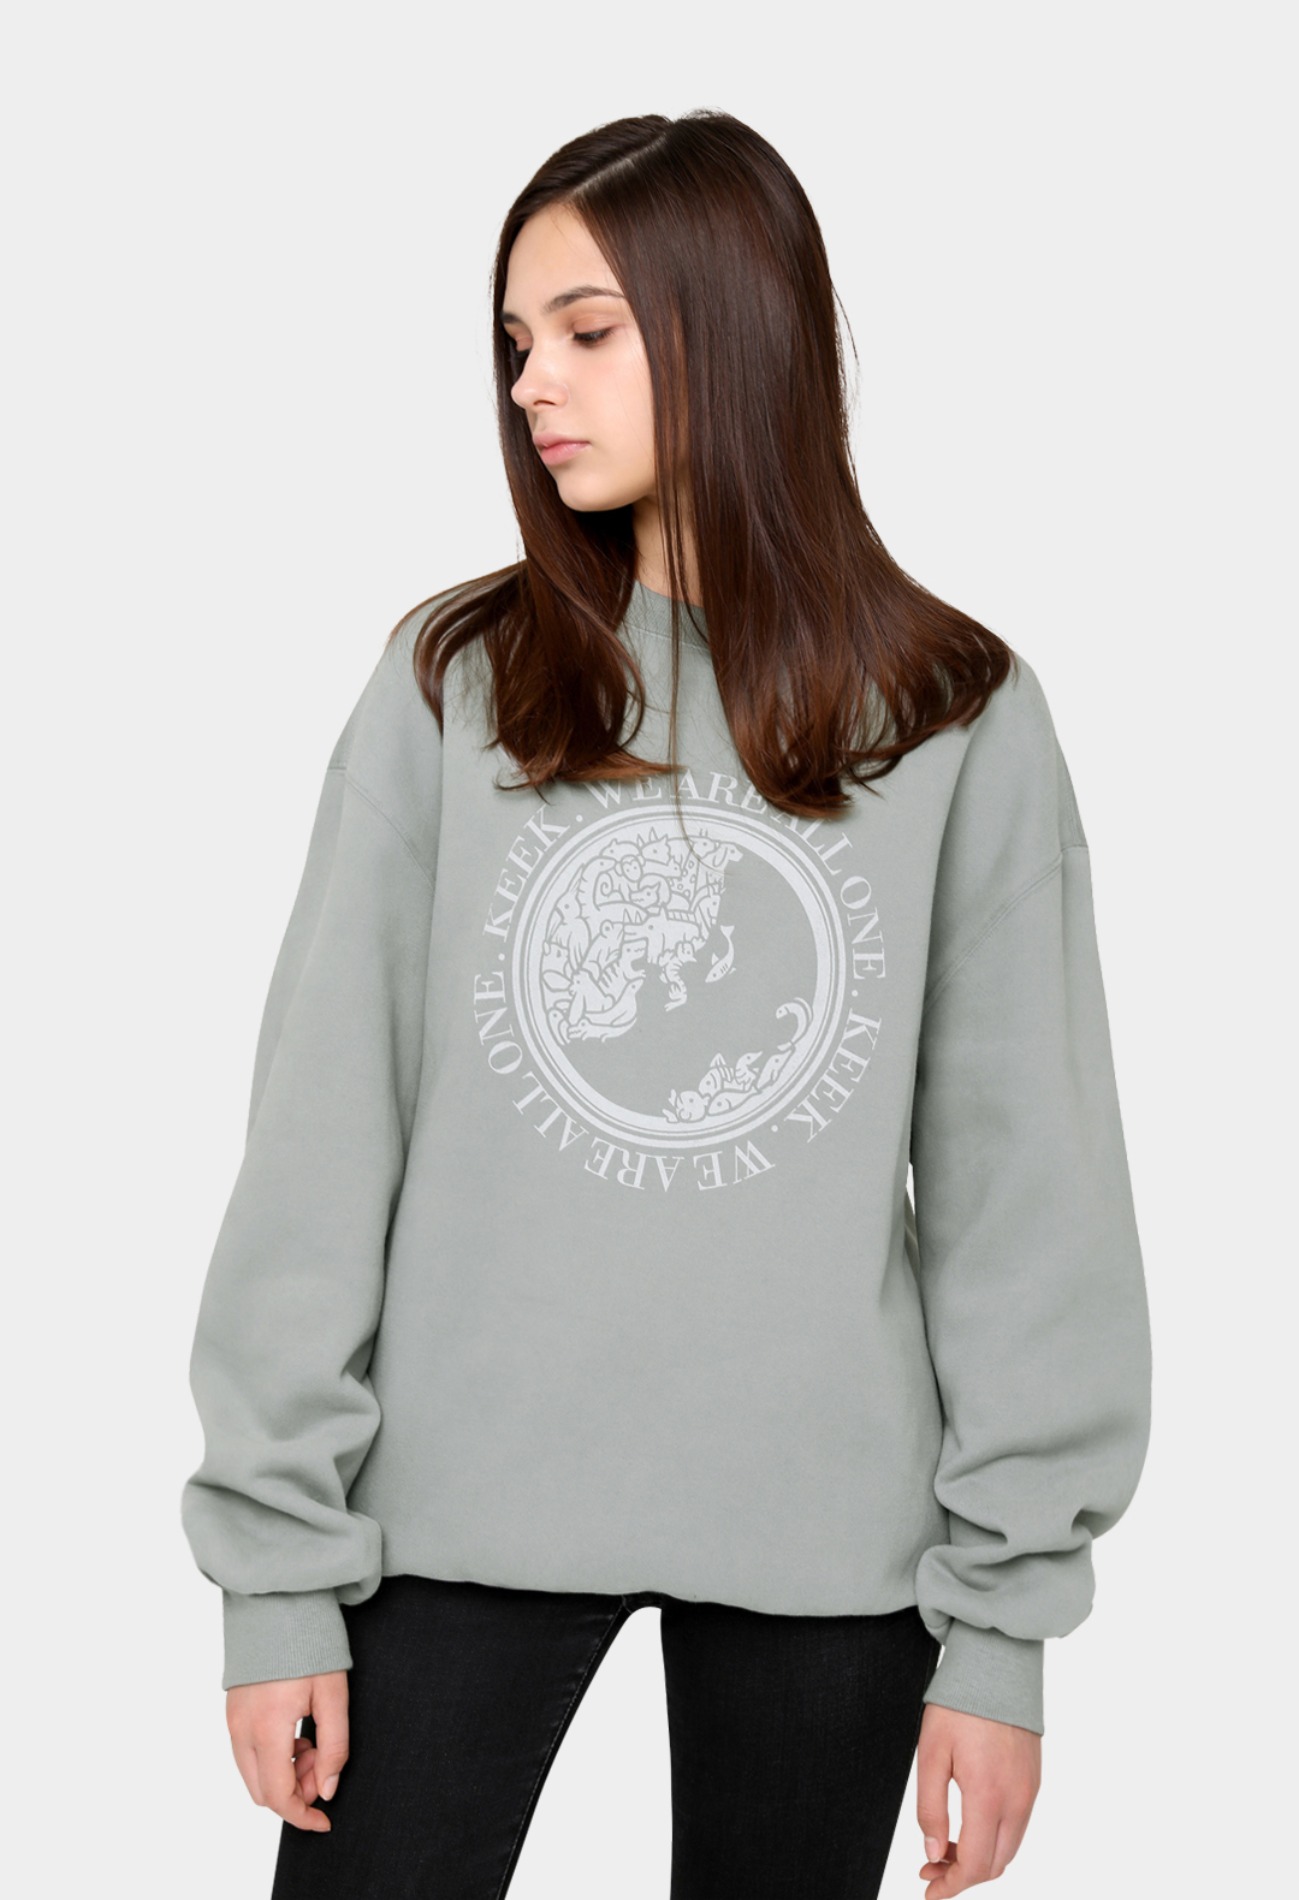 keek [Unisex] Earth Sweatshirts - Vintage Mint 스트릿패션 유니섹스브랜드 커플시밀러룩 남자쇼핑몰 여성의류쇼핑몰 후드티 힙색